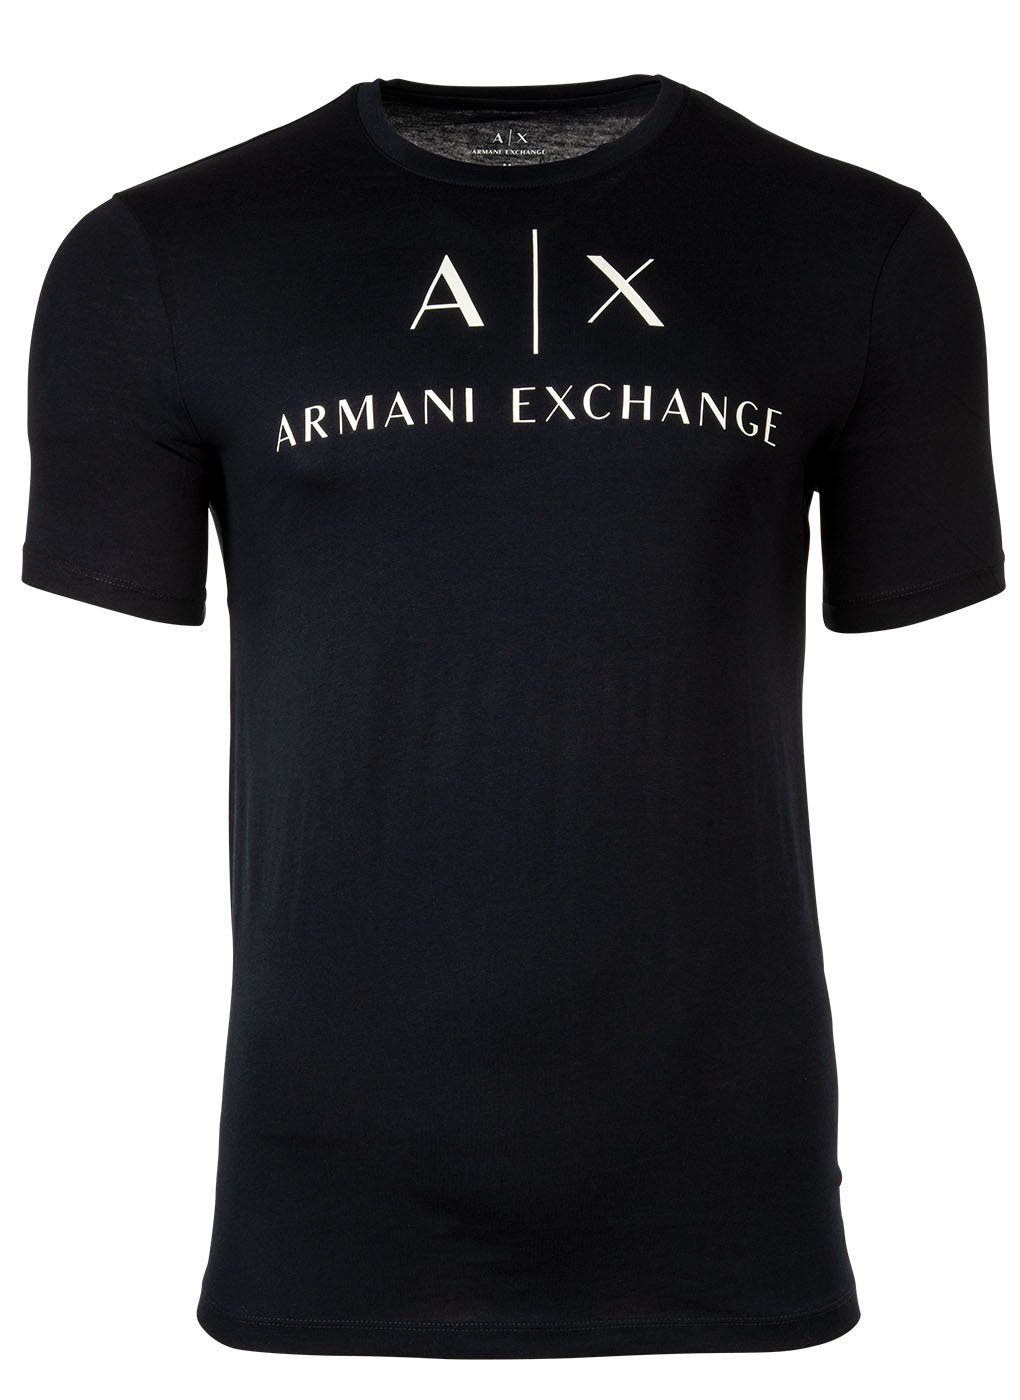 ARMANI EXCHANGE Herren T-Shirt Rundhals, T-Shirt Schriftzug, Marine - Cotton